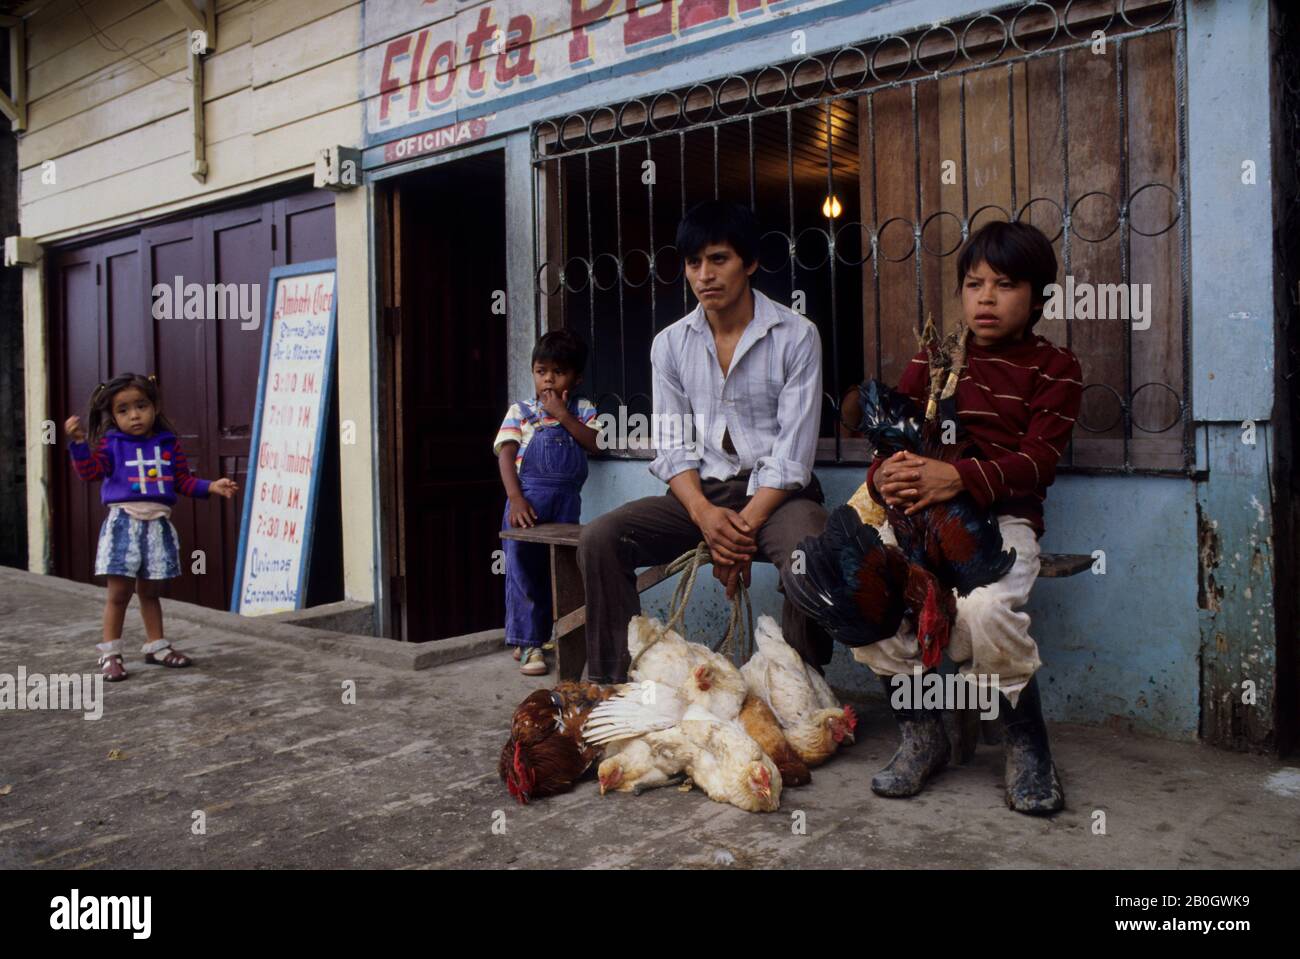 ECUADOR, AMAZON BASIN, COCA, STREET SCENE WITH FATHER & SON SELLING CHICKENS Stock Photo